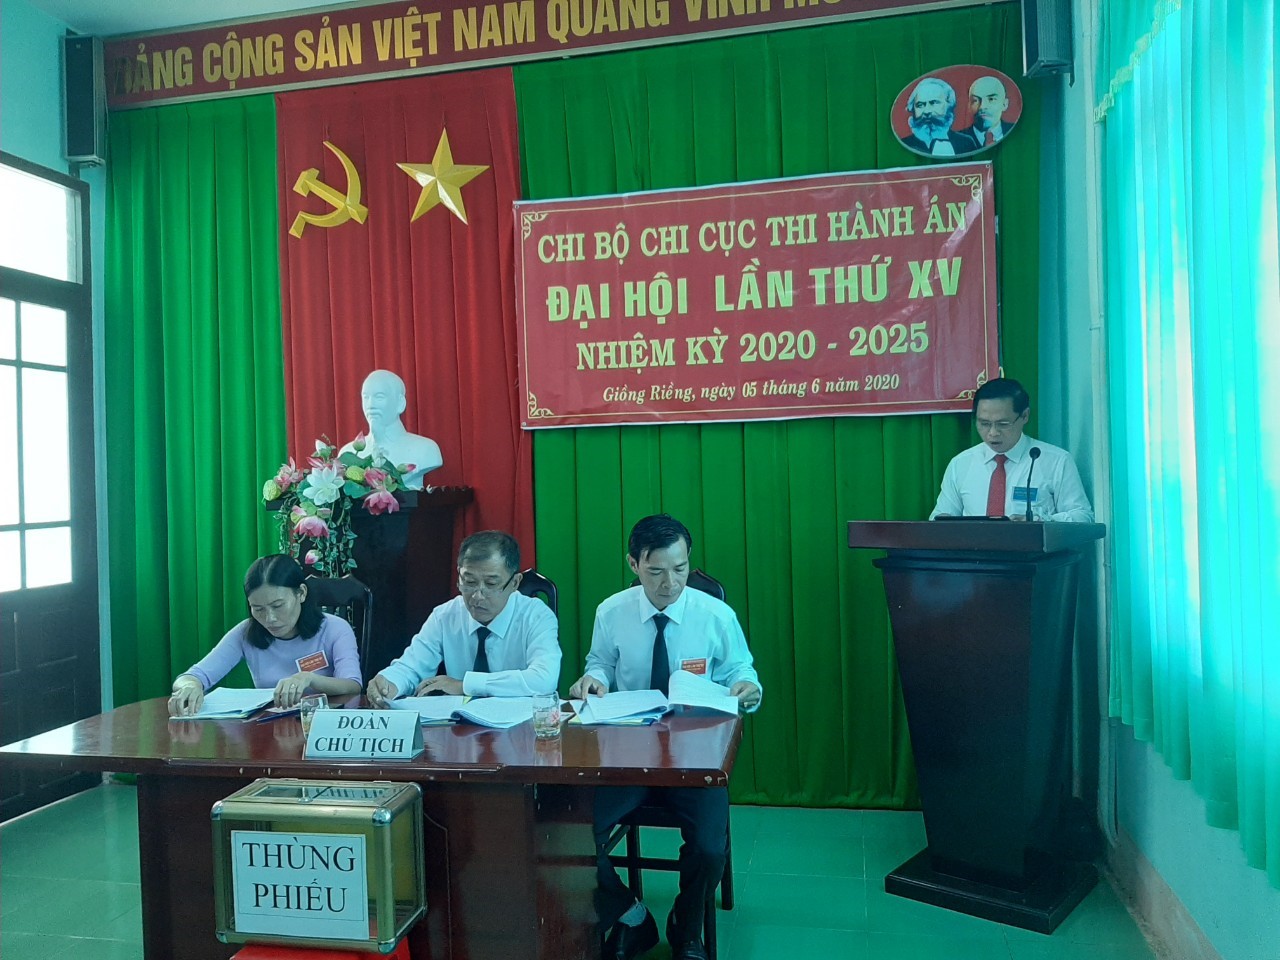 Chi bộ Chi cục thi hành án huyện Giồng Riềng tiến hành Đại hội đảng viên lần thứ XV (nhiệm kỳ 2020 - 2025)